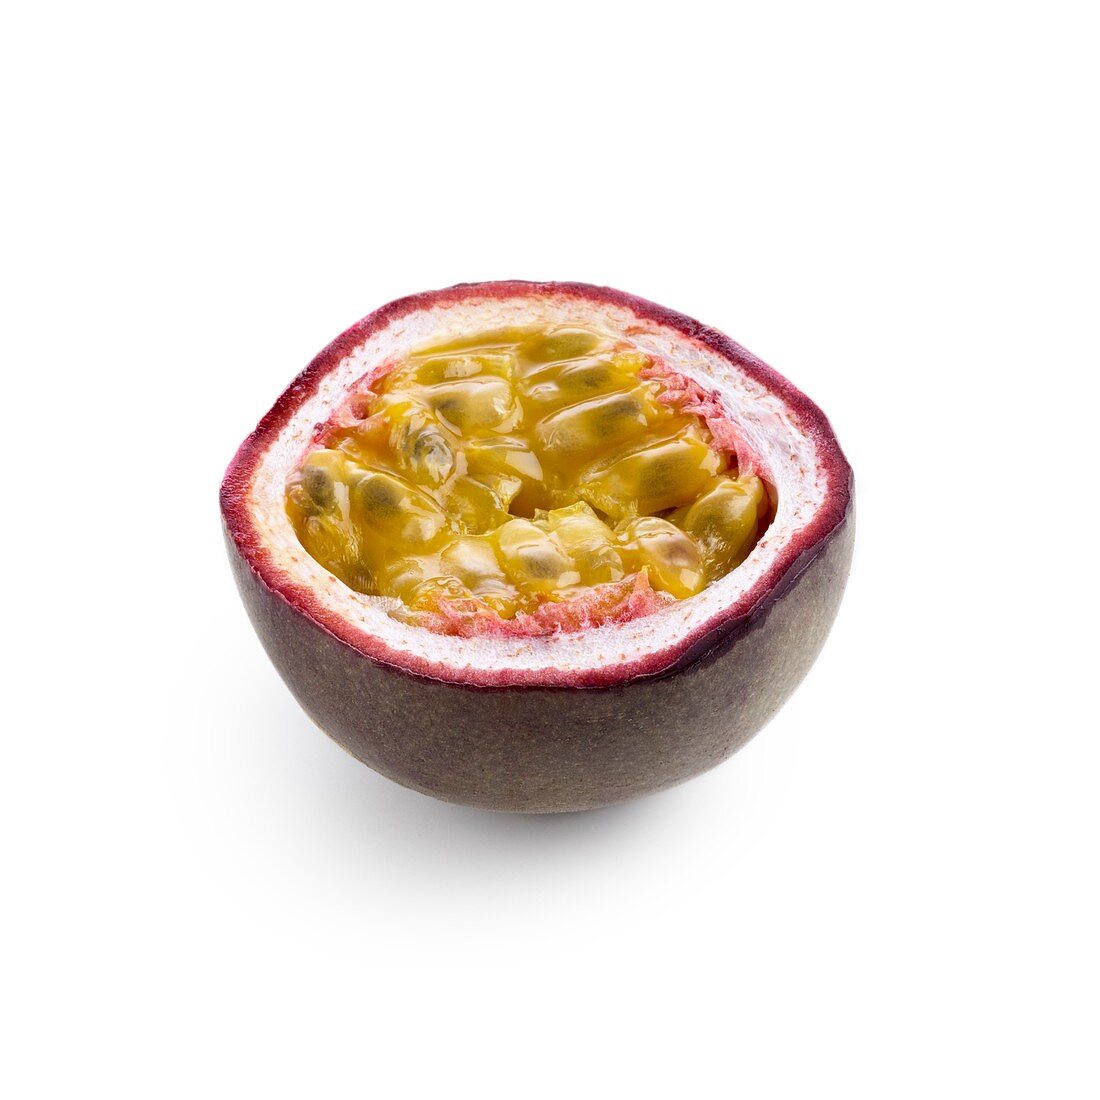 Half a passionfruit